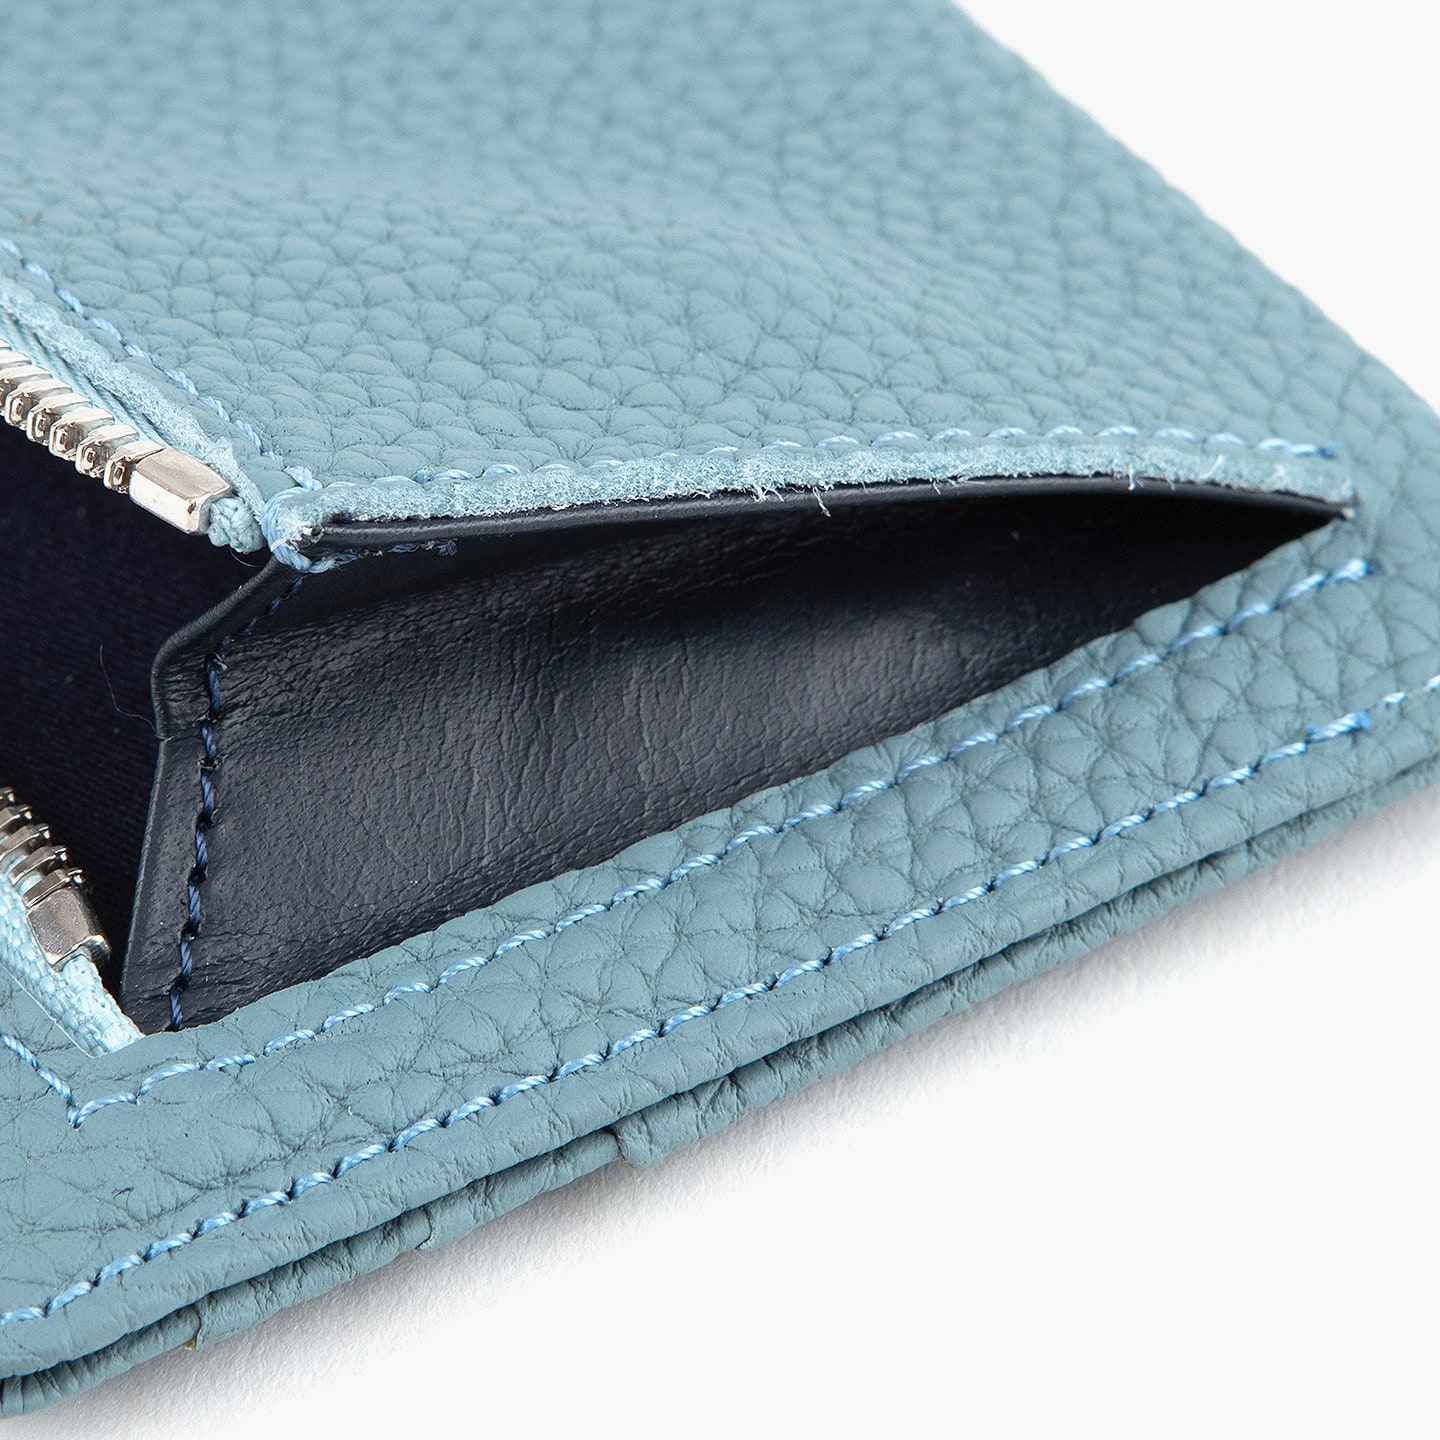 シュランケンカーフ ポケットウォレット 大人のバッグ・財布・ ミニ・コンパクト財布 など拘りの日本製ブランドなら MLS